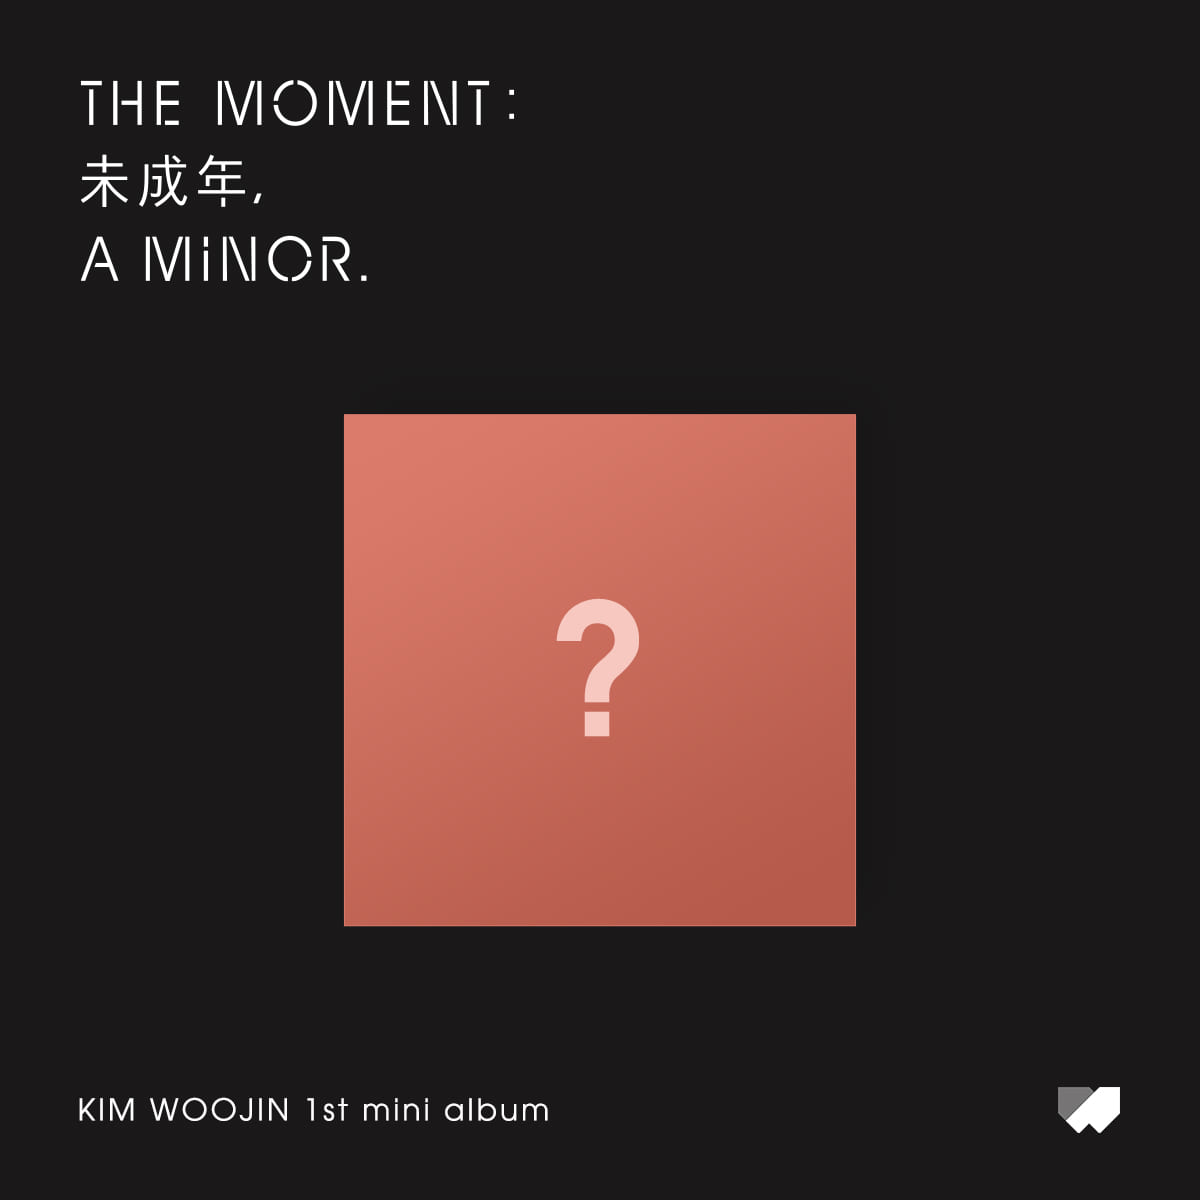 김우진(KIM WOOJIN) - 미니 앨범 [The moment : 未成年, a minor.](Version B)